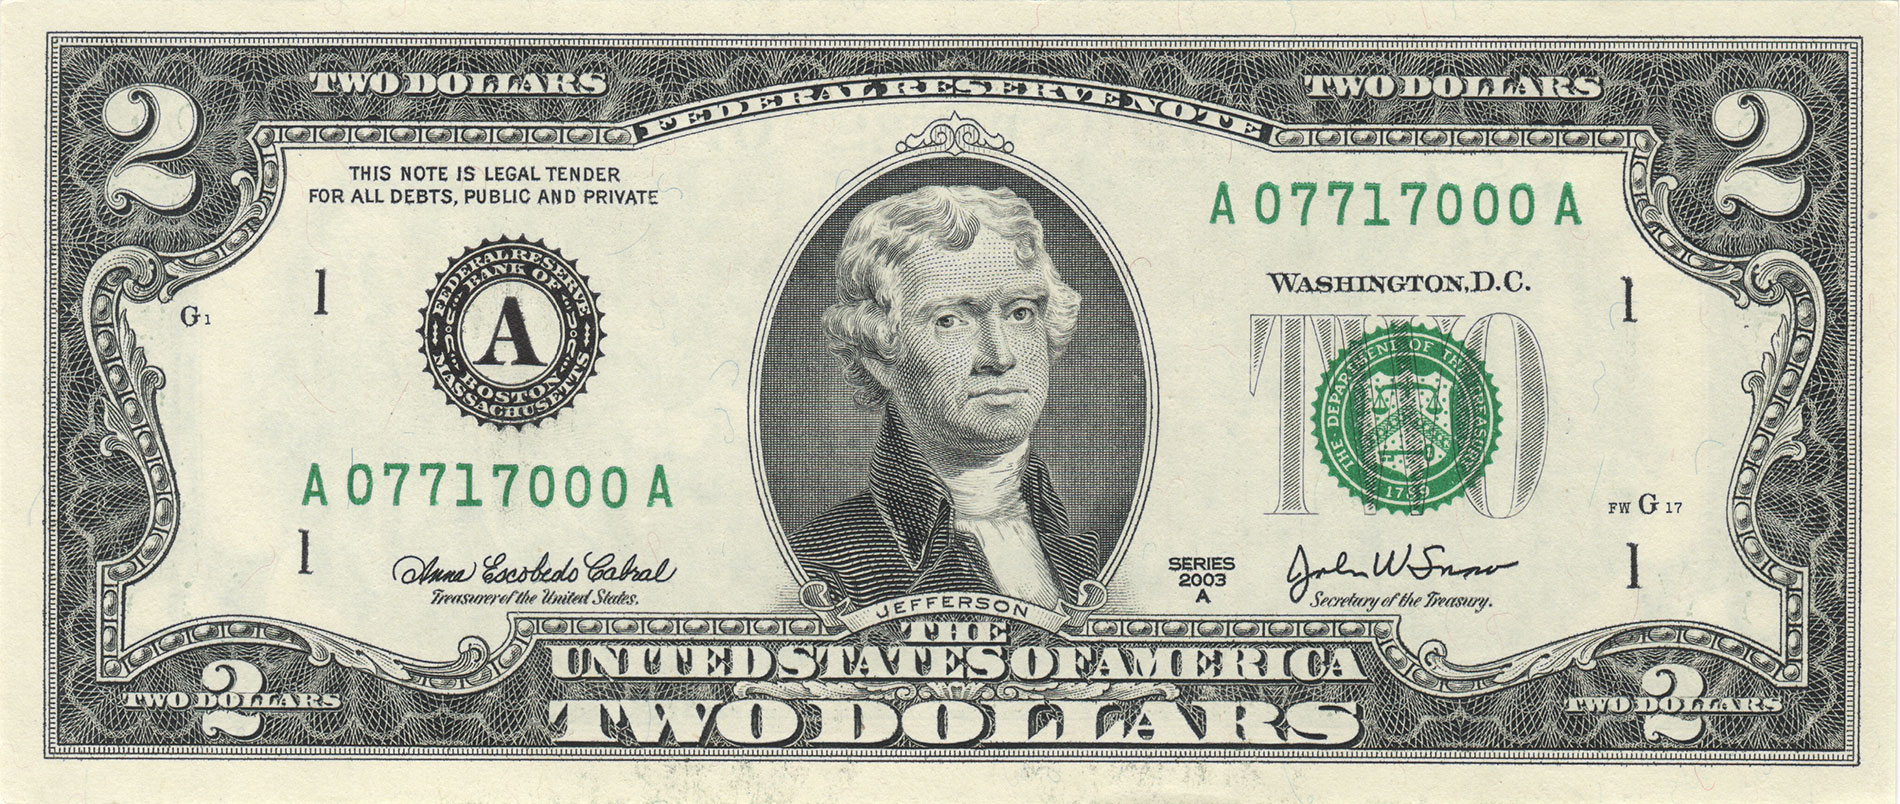 Two Dollar Bill $2 Notes Uncirculated 2013 " ATLANTA " Consecutive 10 